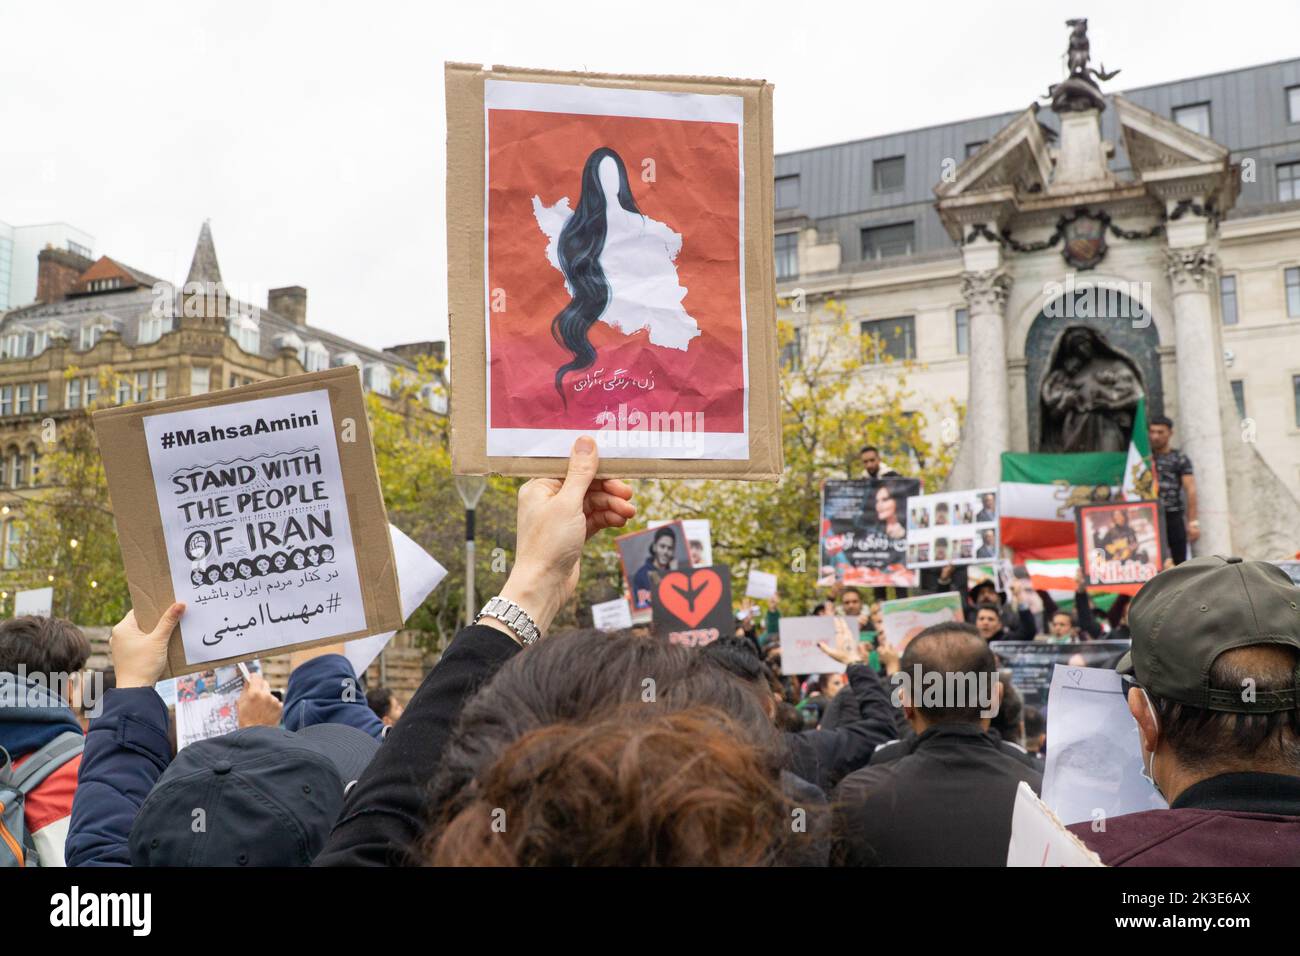 Manchester, Reino Unido, 25 Septemb3er 2022: En Picadilly Gardens en Manchester, aproximadamente doscientos expatriados iraníes protestaron contra el actual gobierno iraní y pidieron un cambio de régimen. Agitando la vieja bandera iraní pre-revolucionaria, los manifestantes cantaron el nombre de Mahsa Amini, que fue asesinado recientemente por la Guardia Revolucionaria de Irán por no cubrirse el pelo. Noticias vivas de Anna Watson/Alamy Foto de stock